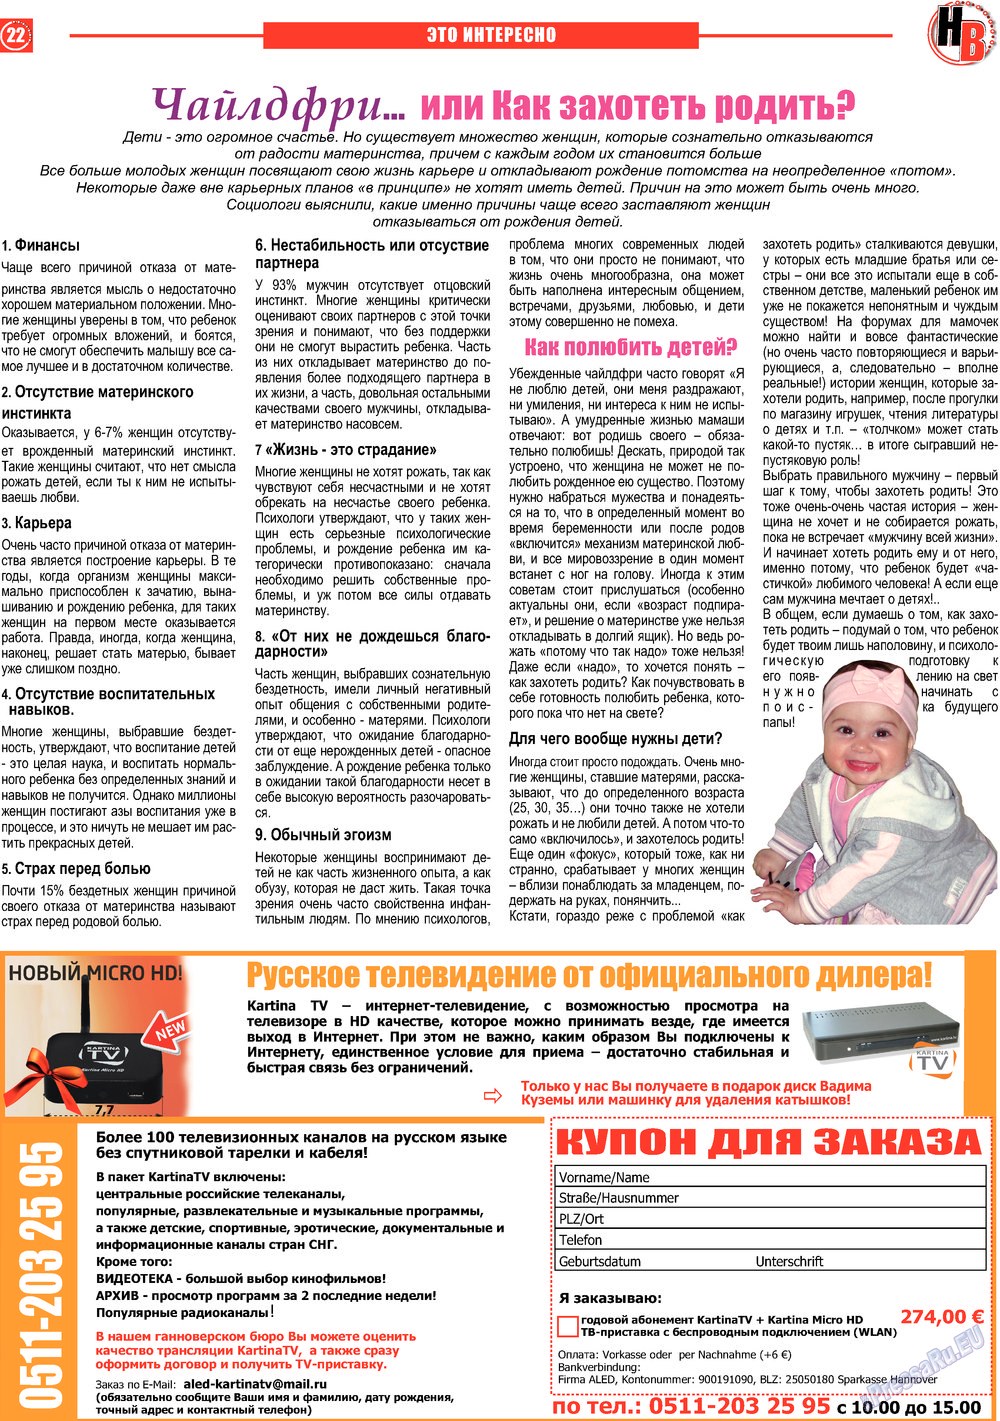 Наше время, газета. 2013 №5 стр.22